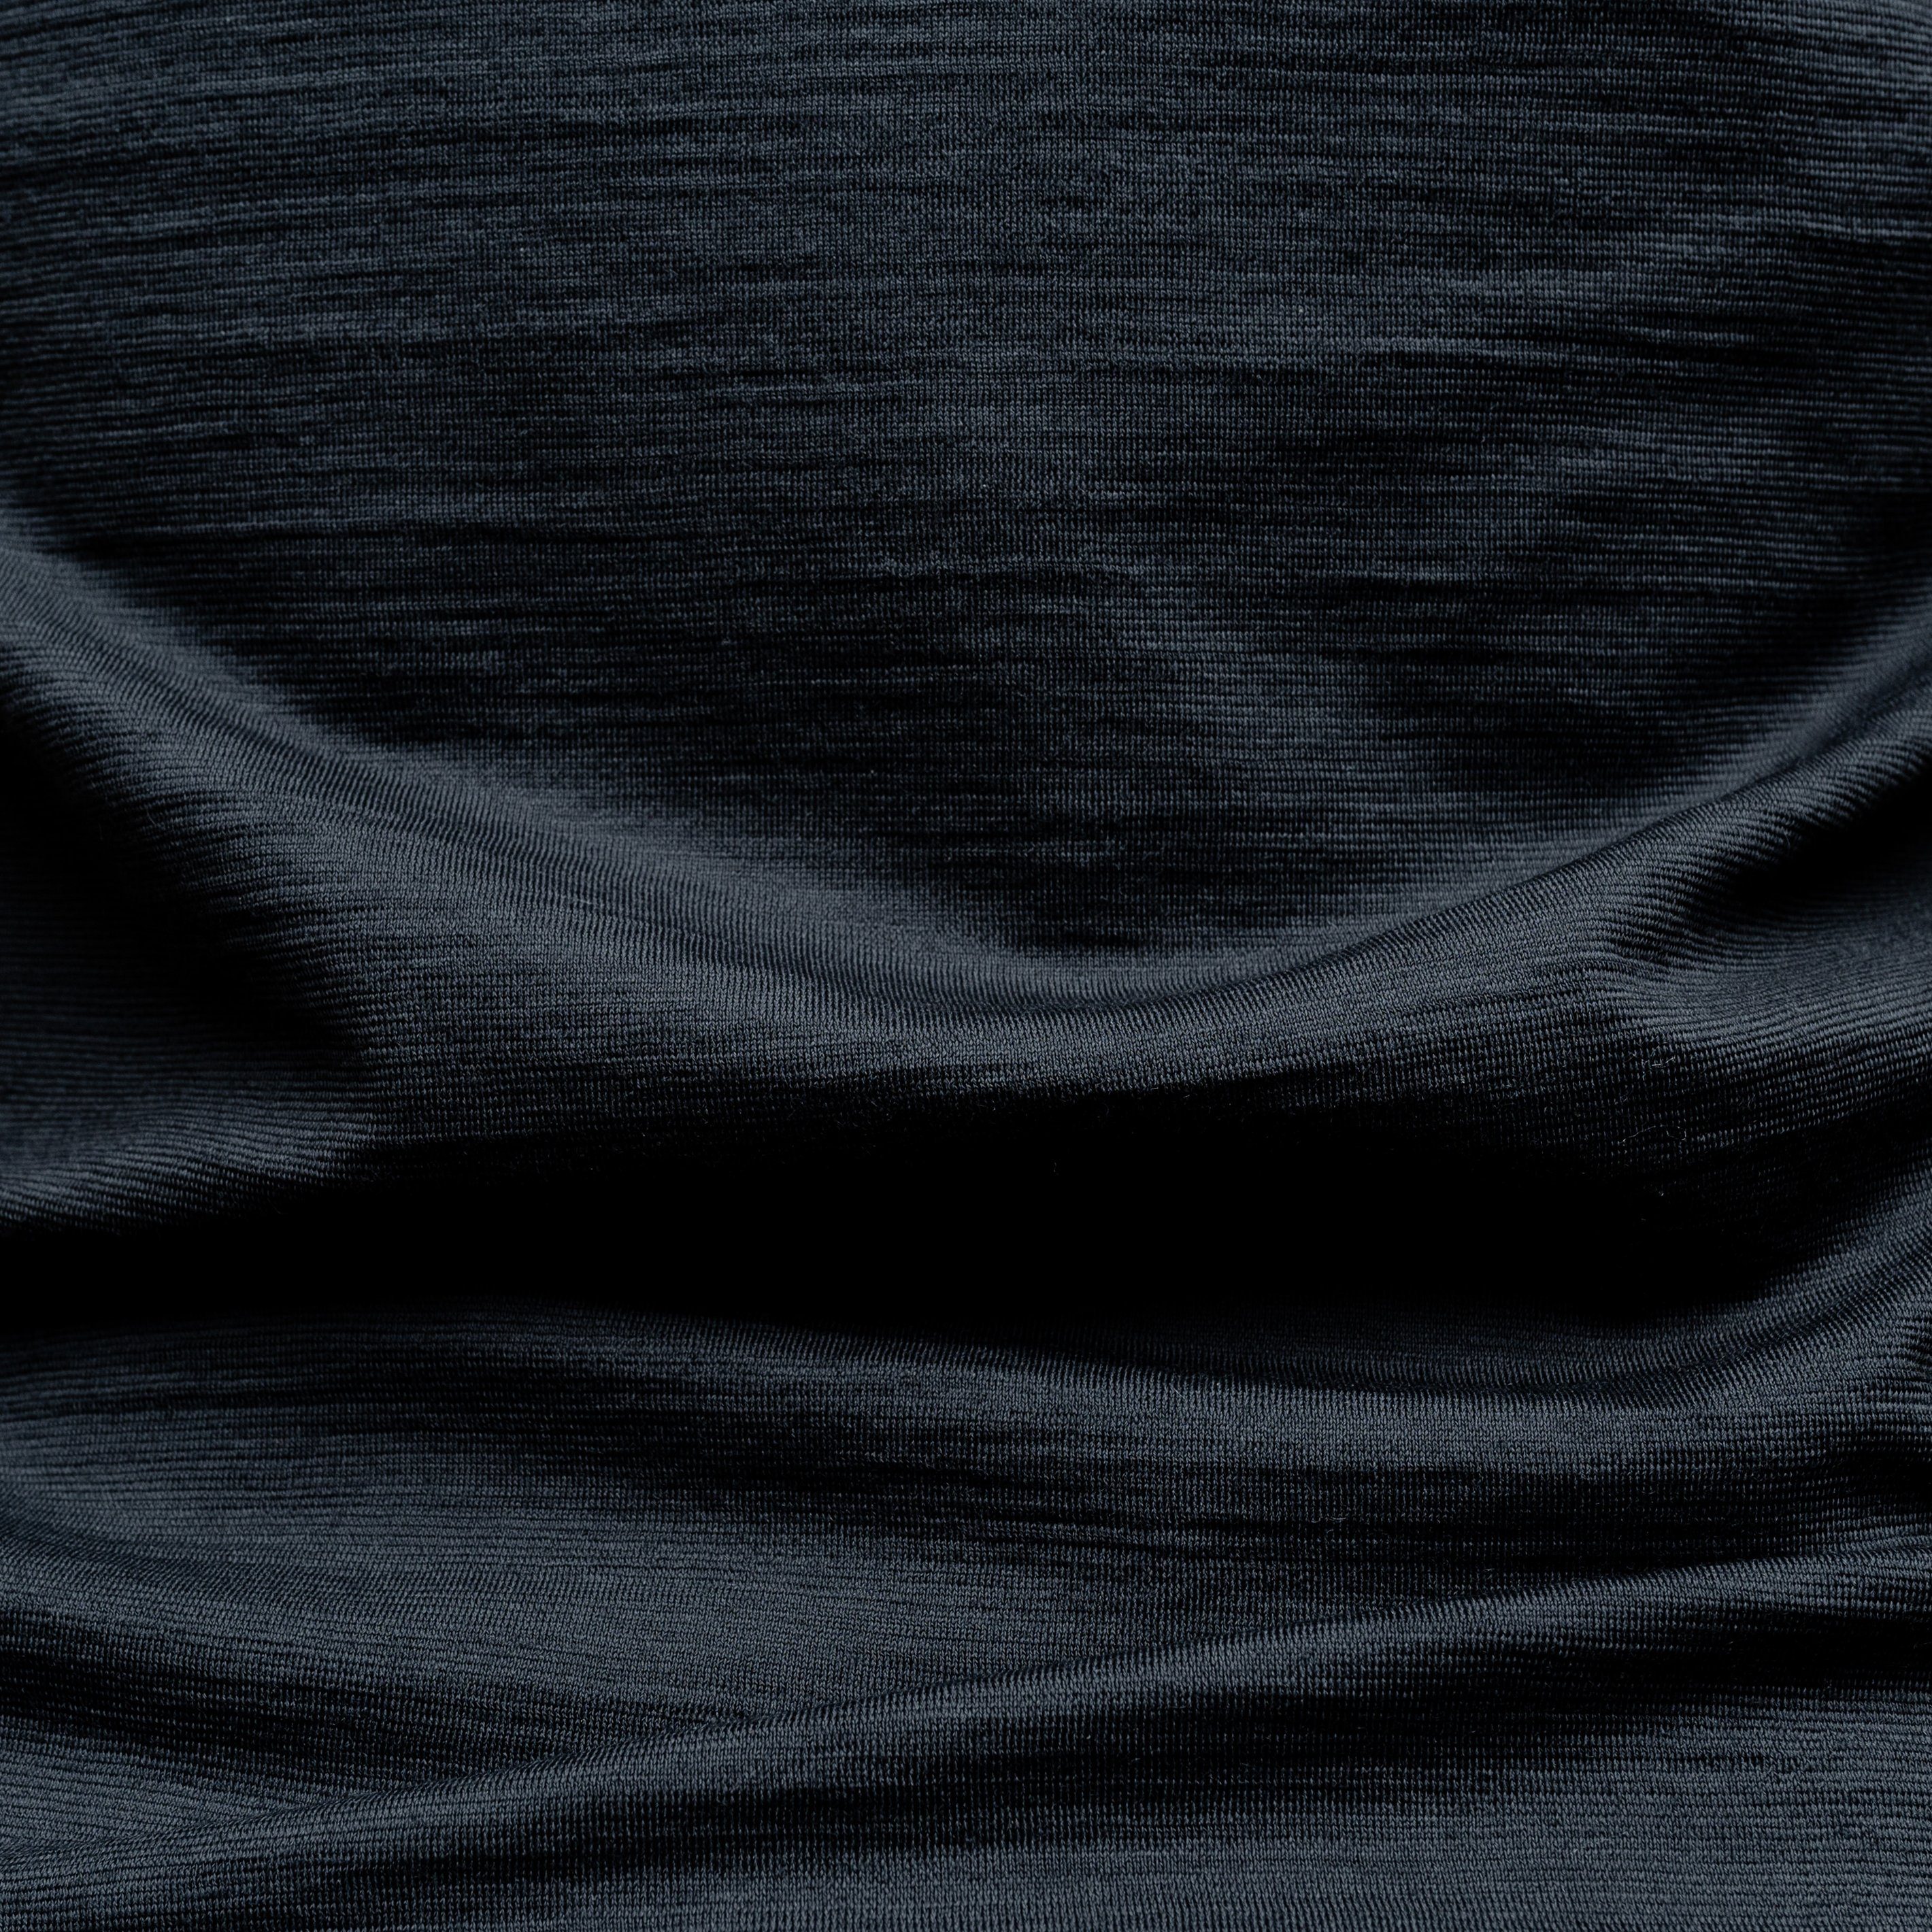 Tom Fyfe T-Shirt V-Ausschnitt Anthrazit Damen Merino T-Shirt